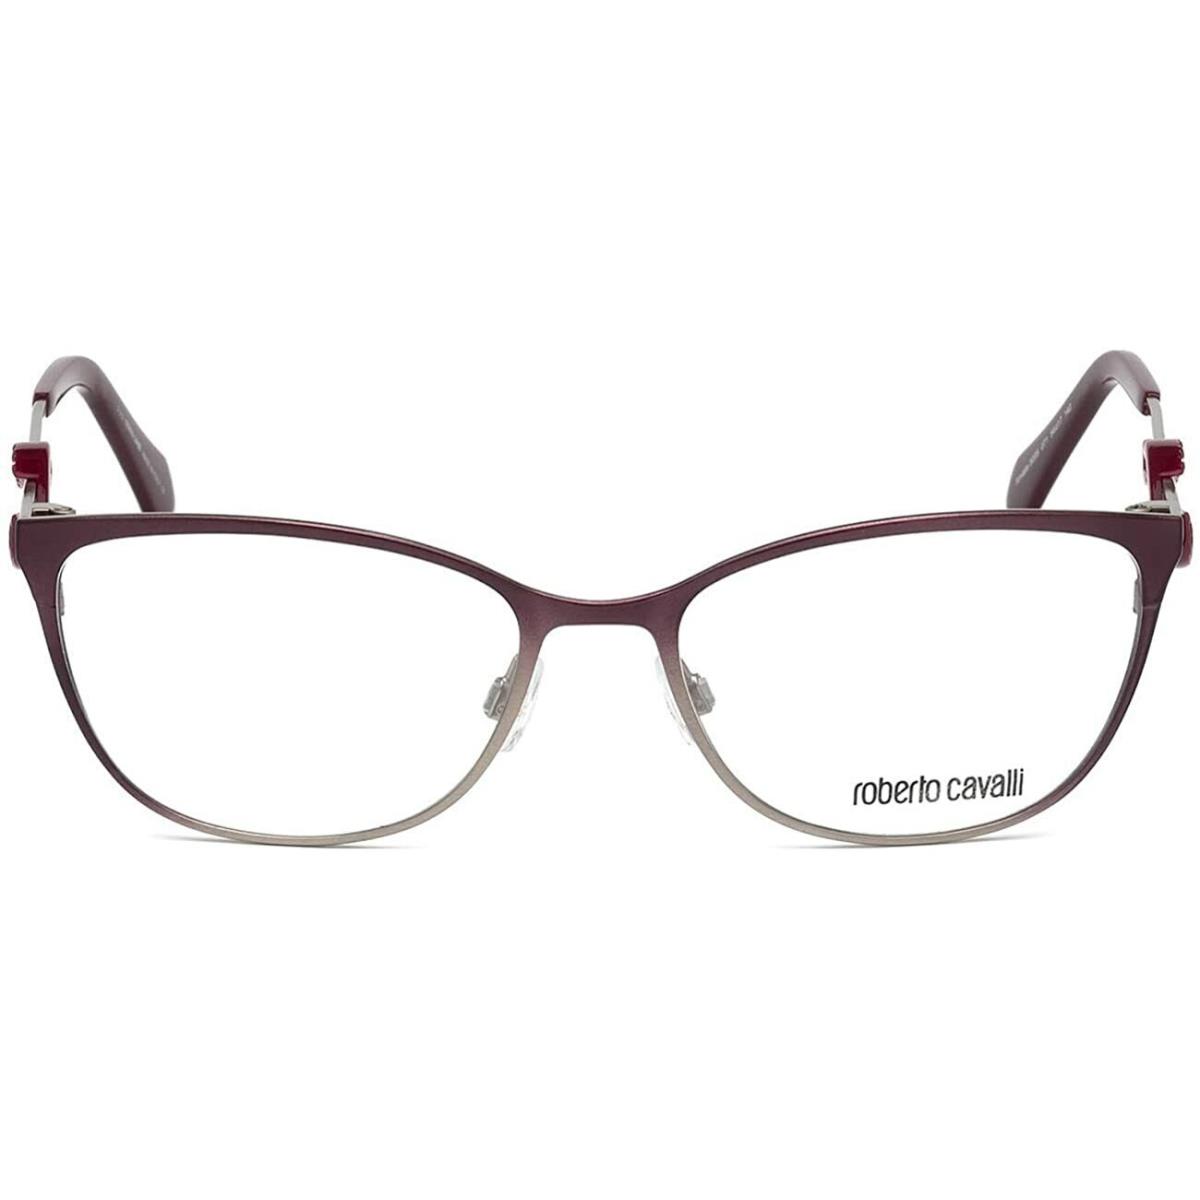 Roberto Cavalli Amiata RC5005 071 Metallic Red 028 Eyeglasses Frame 54-17-140